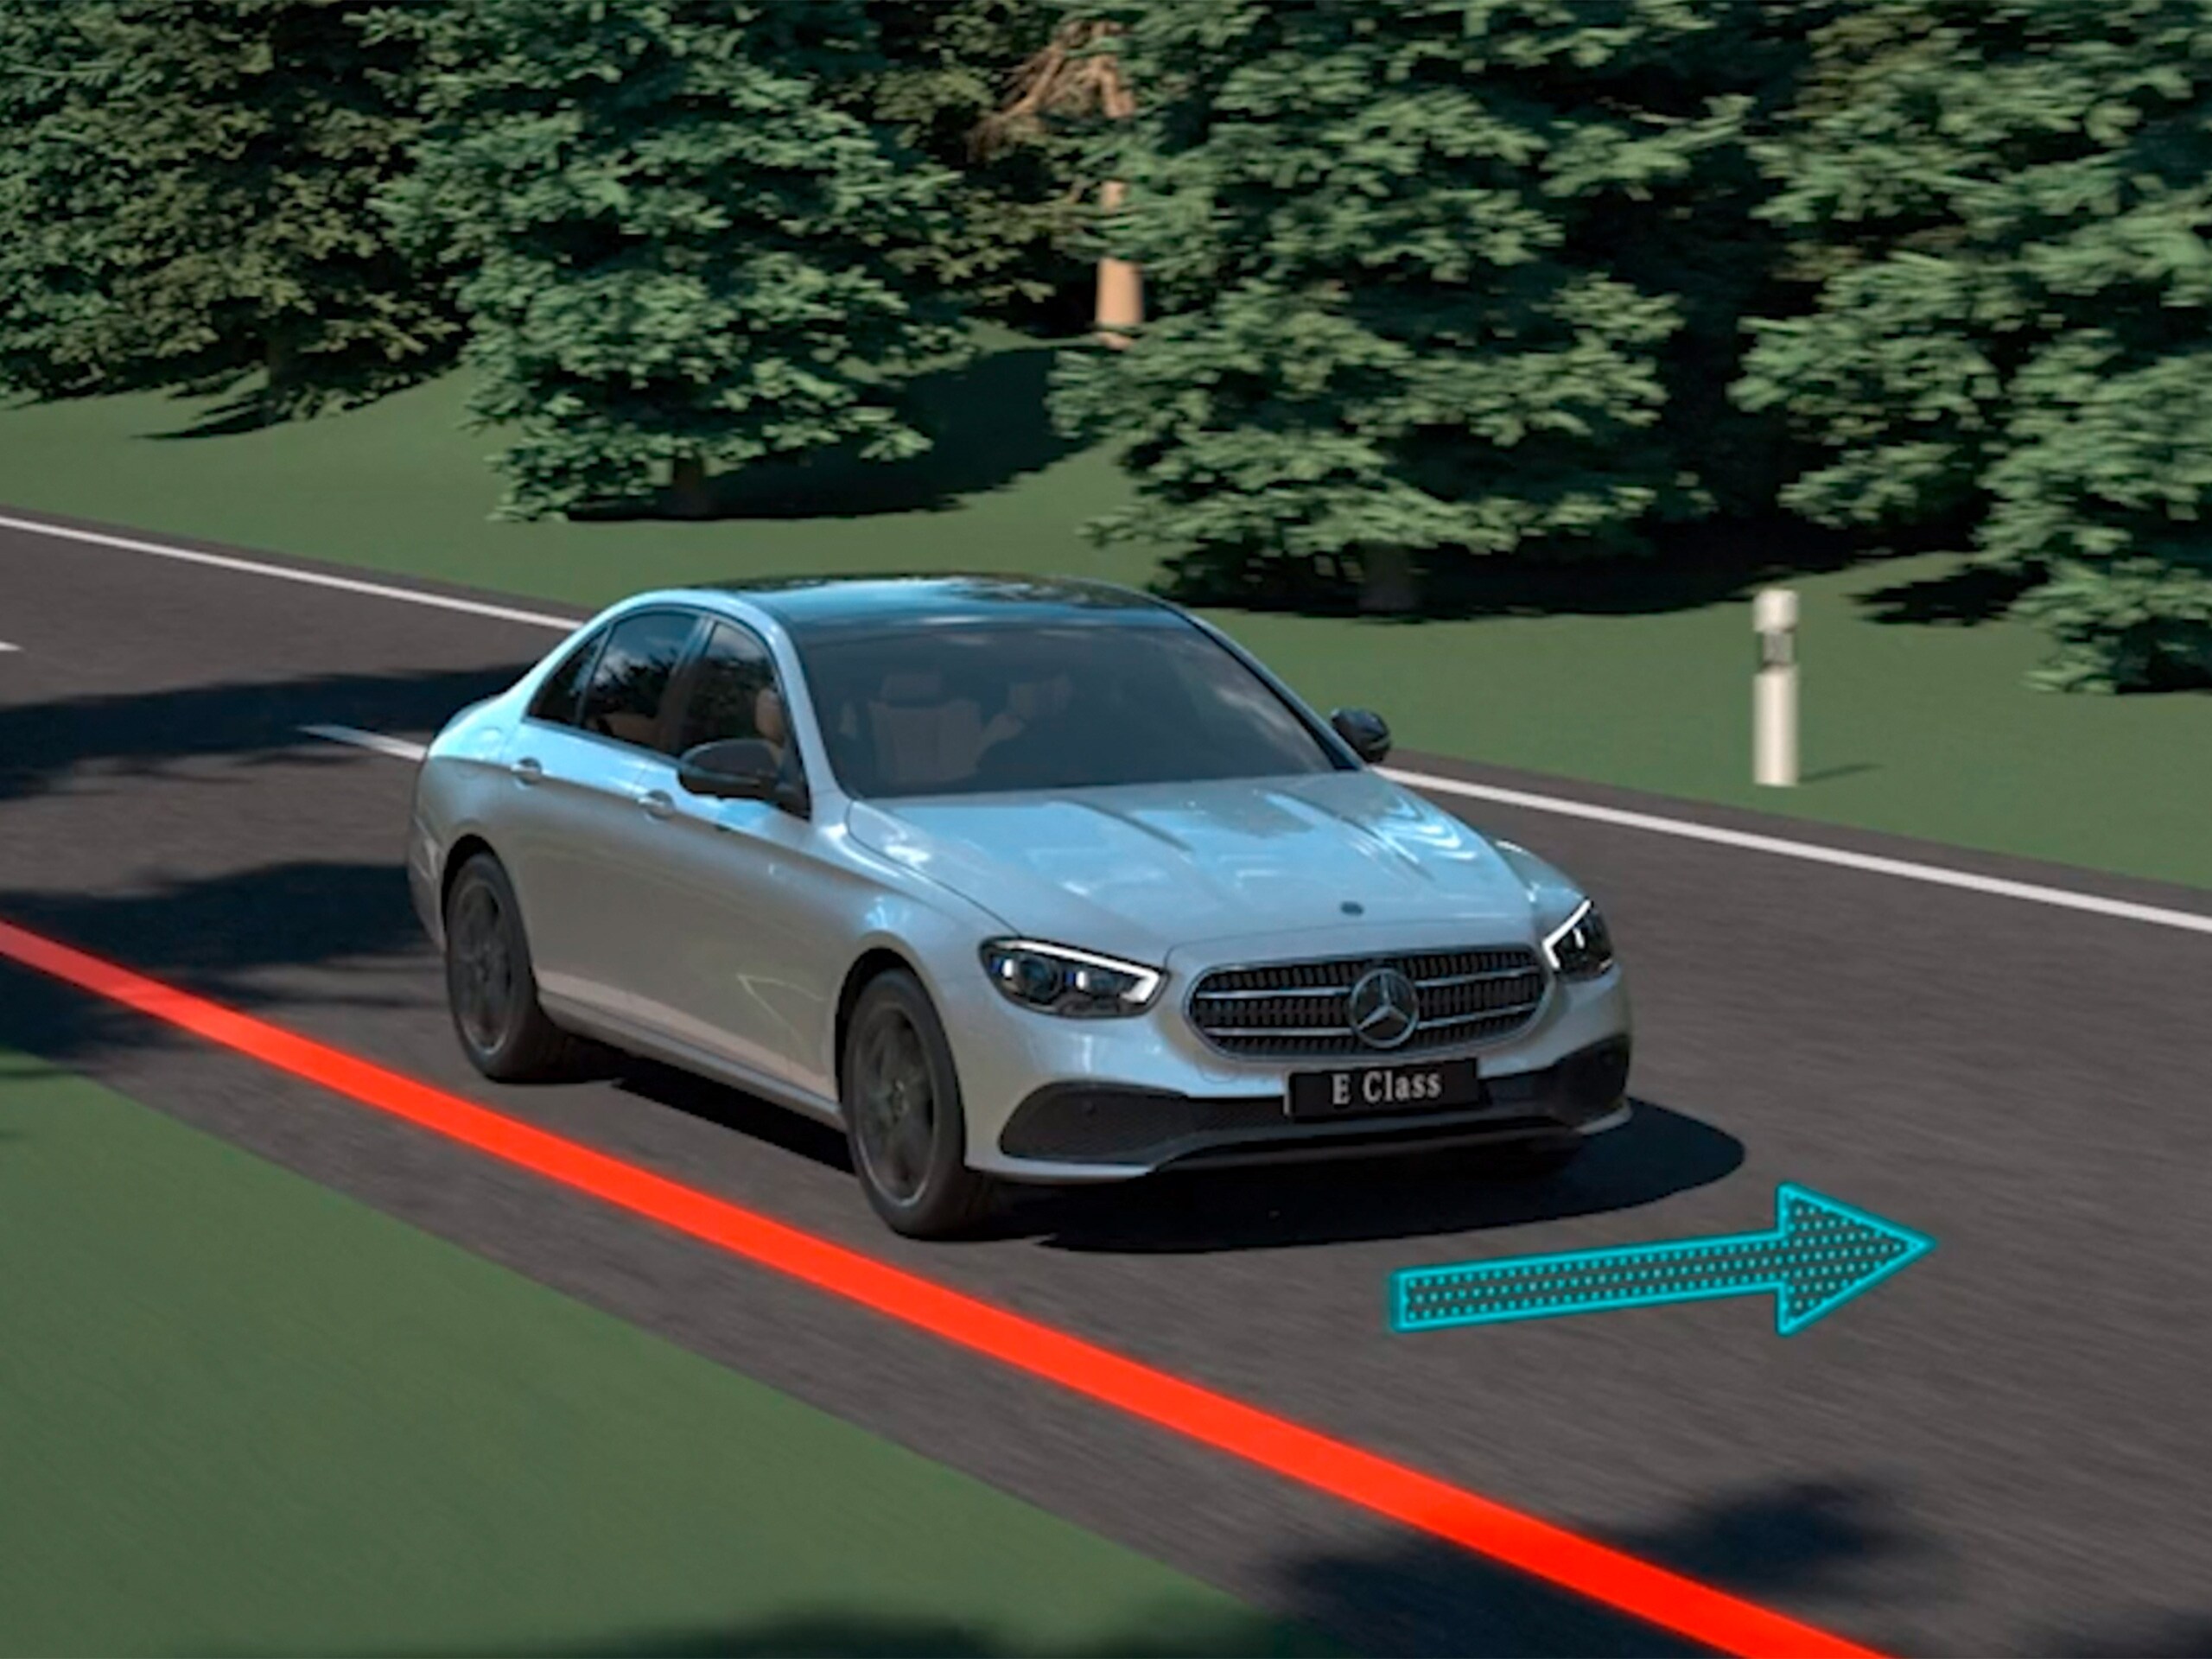 Videoda, Mercedes-Benz CLS Coupé'deki aktif direksiyon yardımcısının fonksiyonları gösterilmektedir.